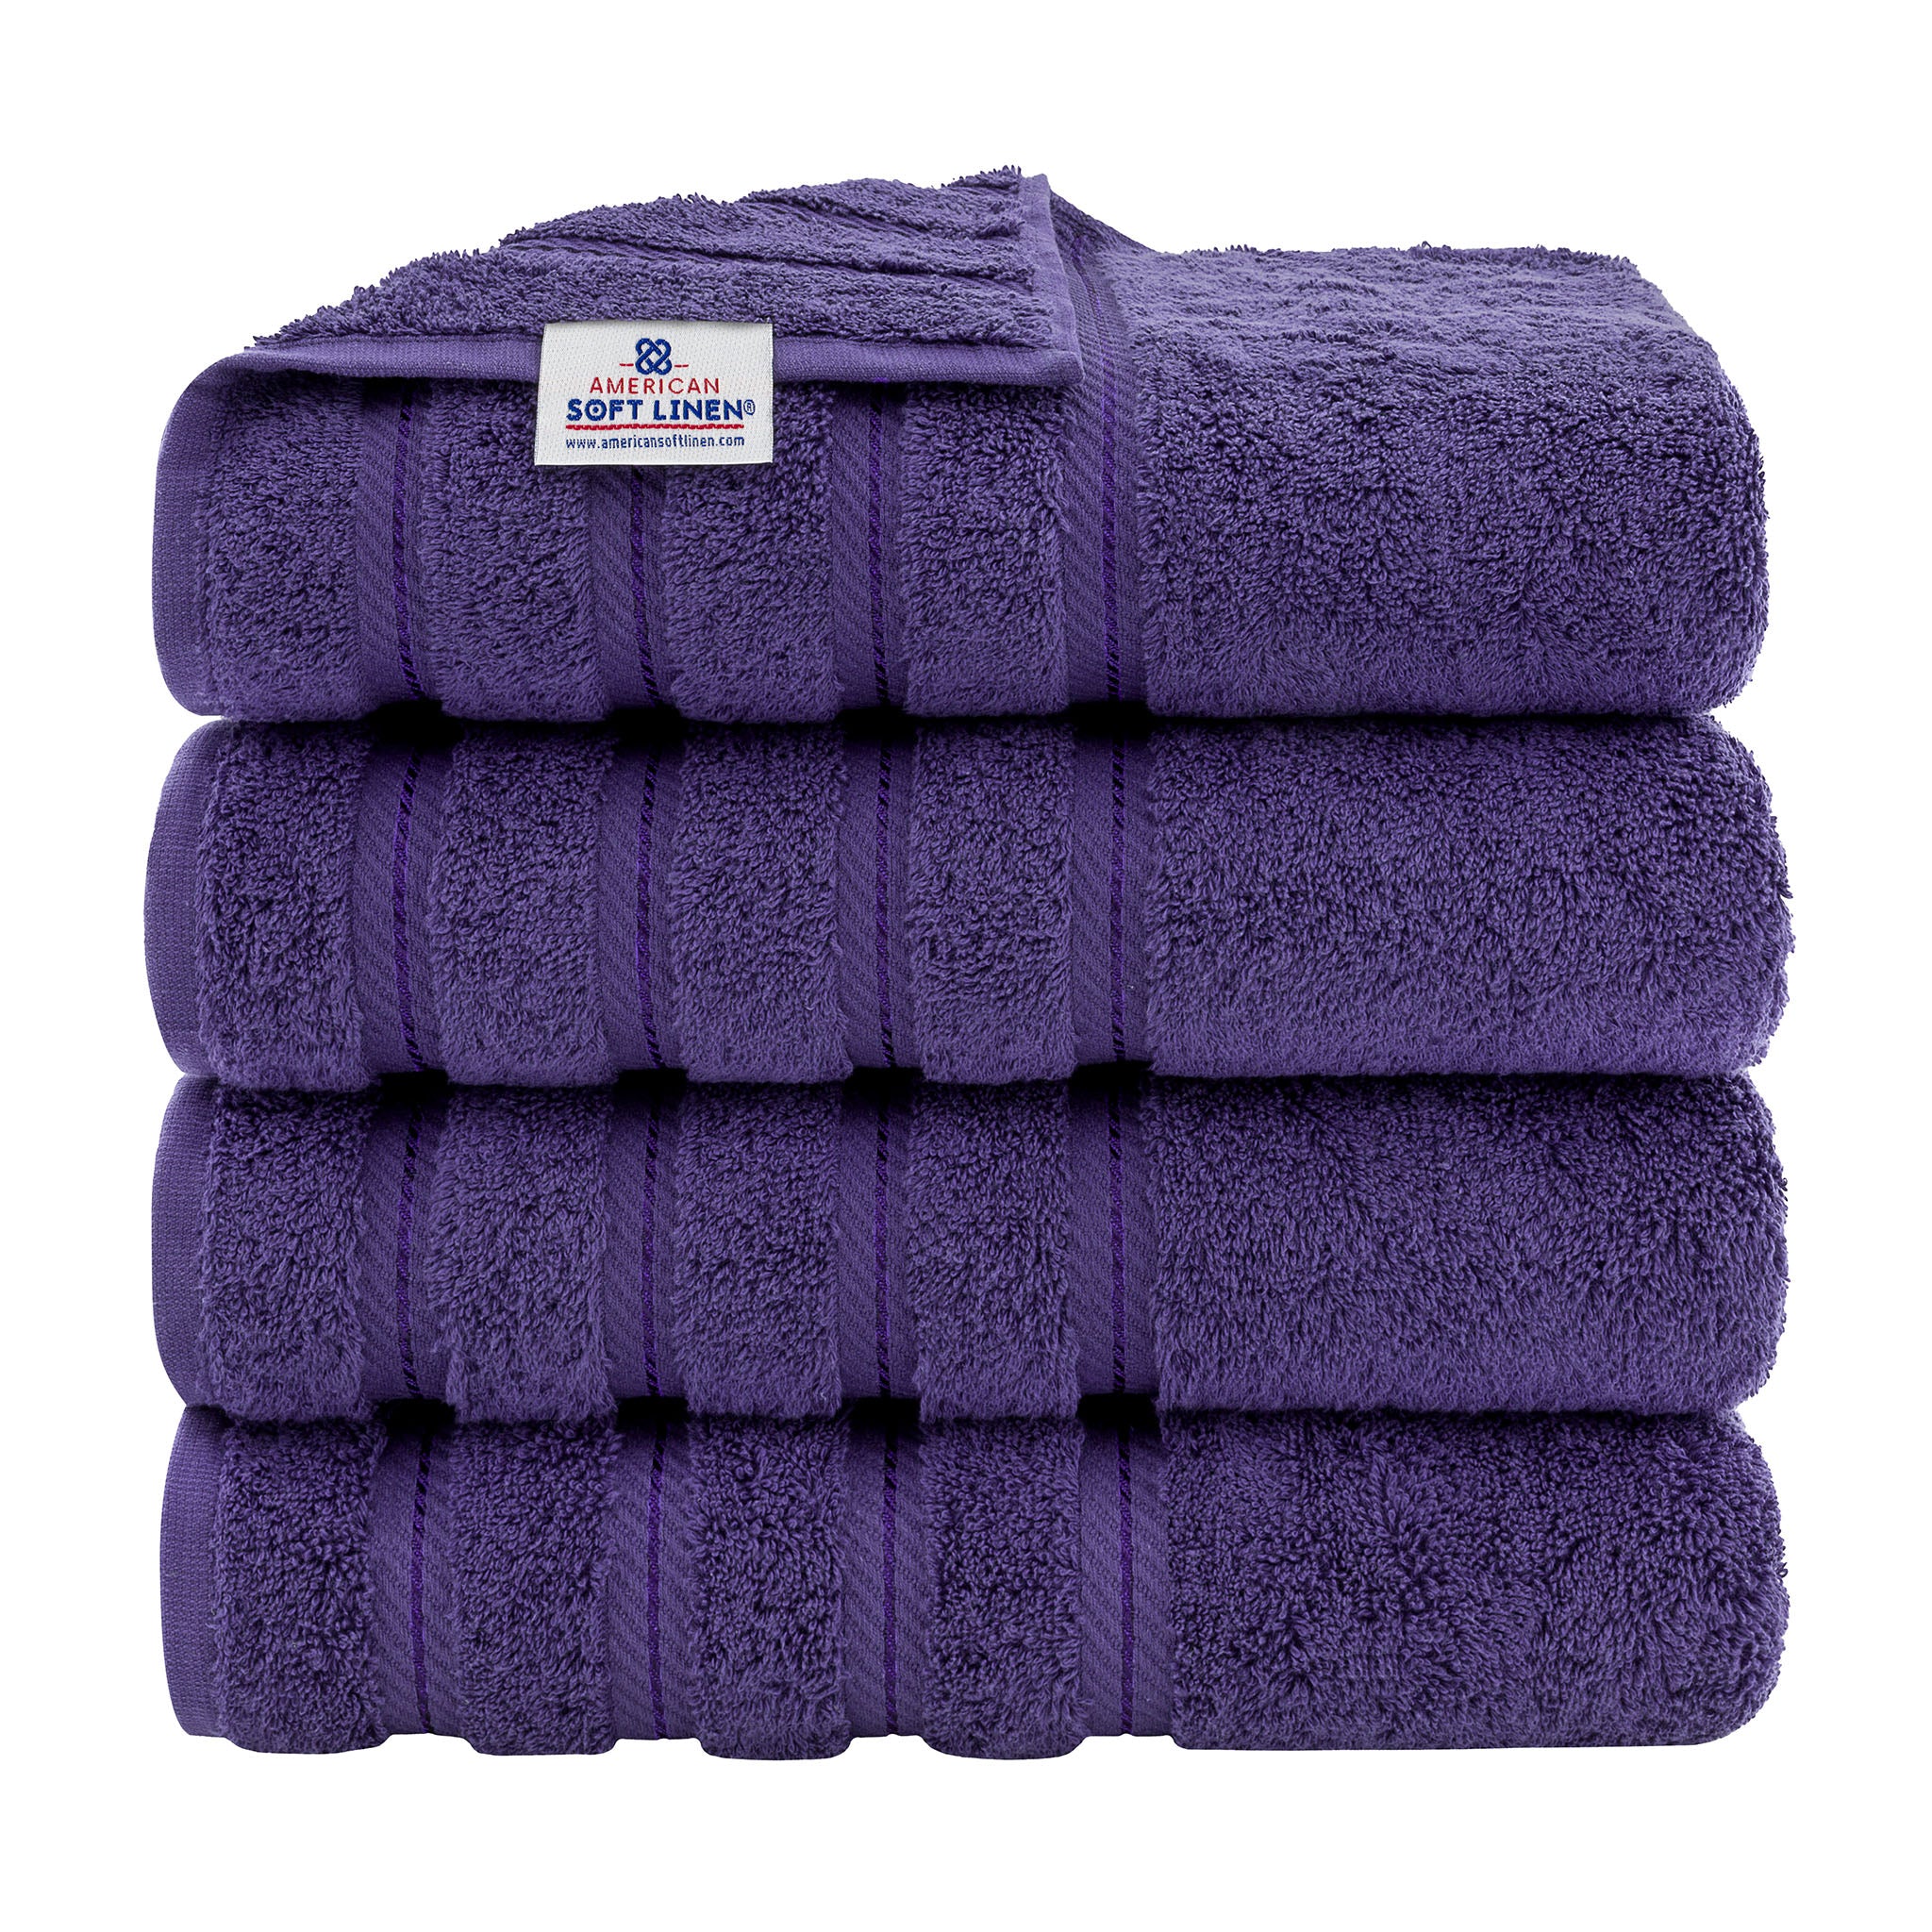 American Soft Linen 100% Turkish Cotton 4 Pack Bath Towel Set Wholesale purple-1